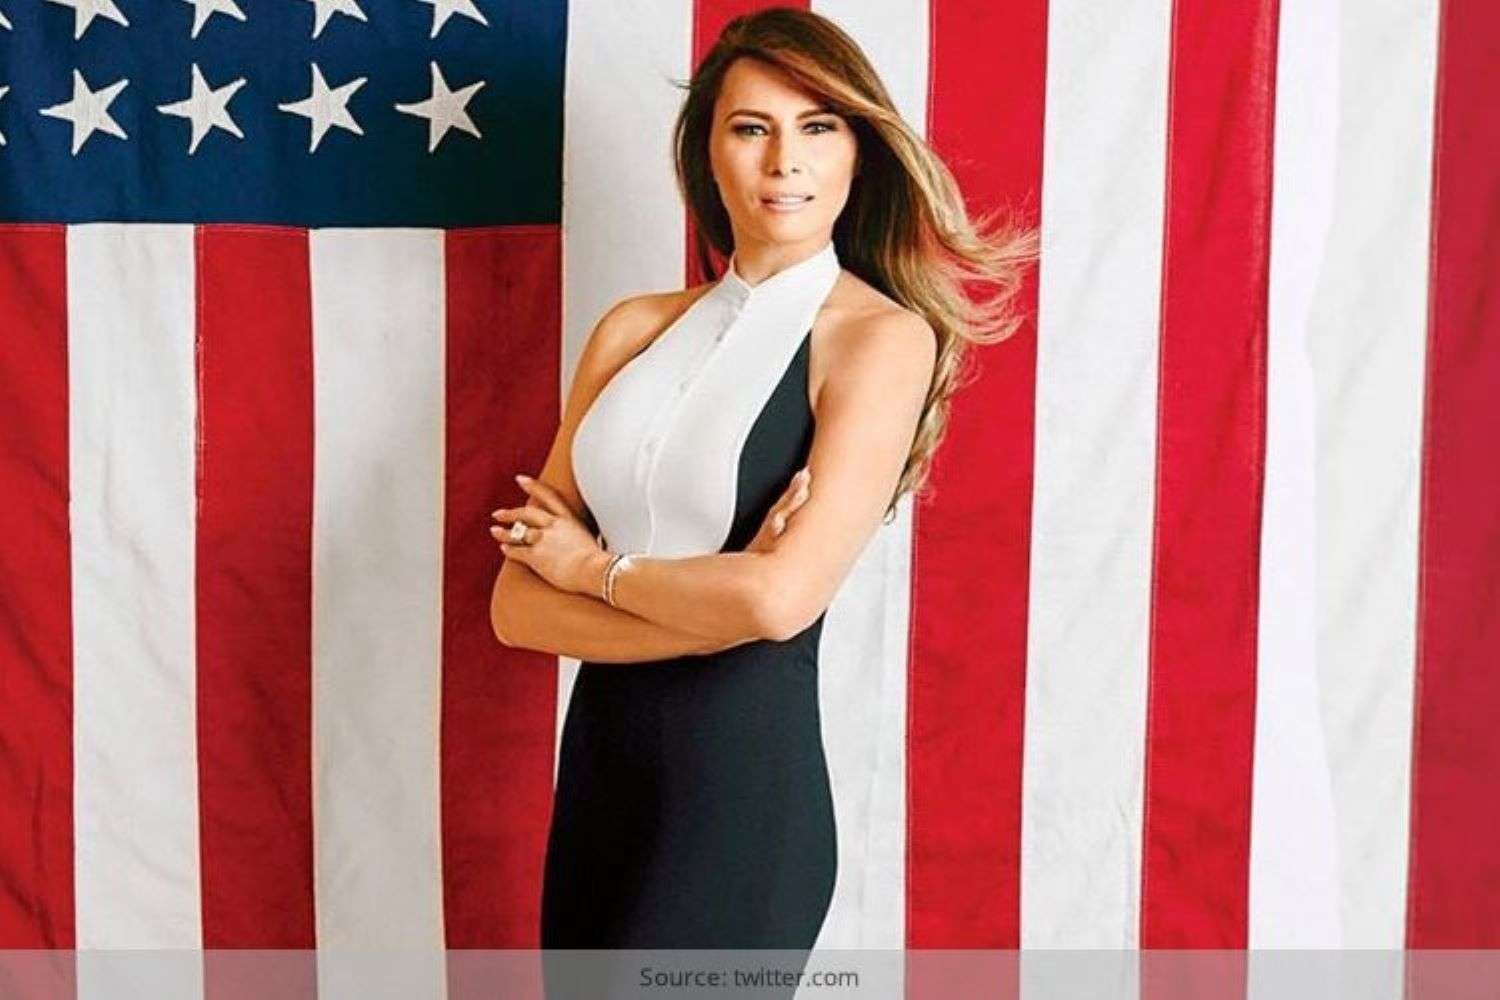 A legszebb First Lady puzzle online fotóról